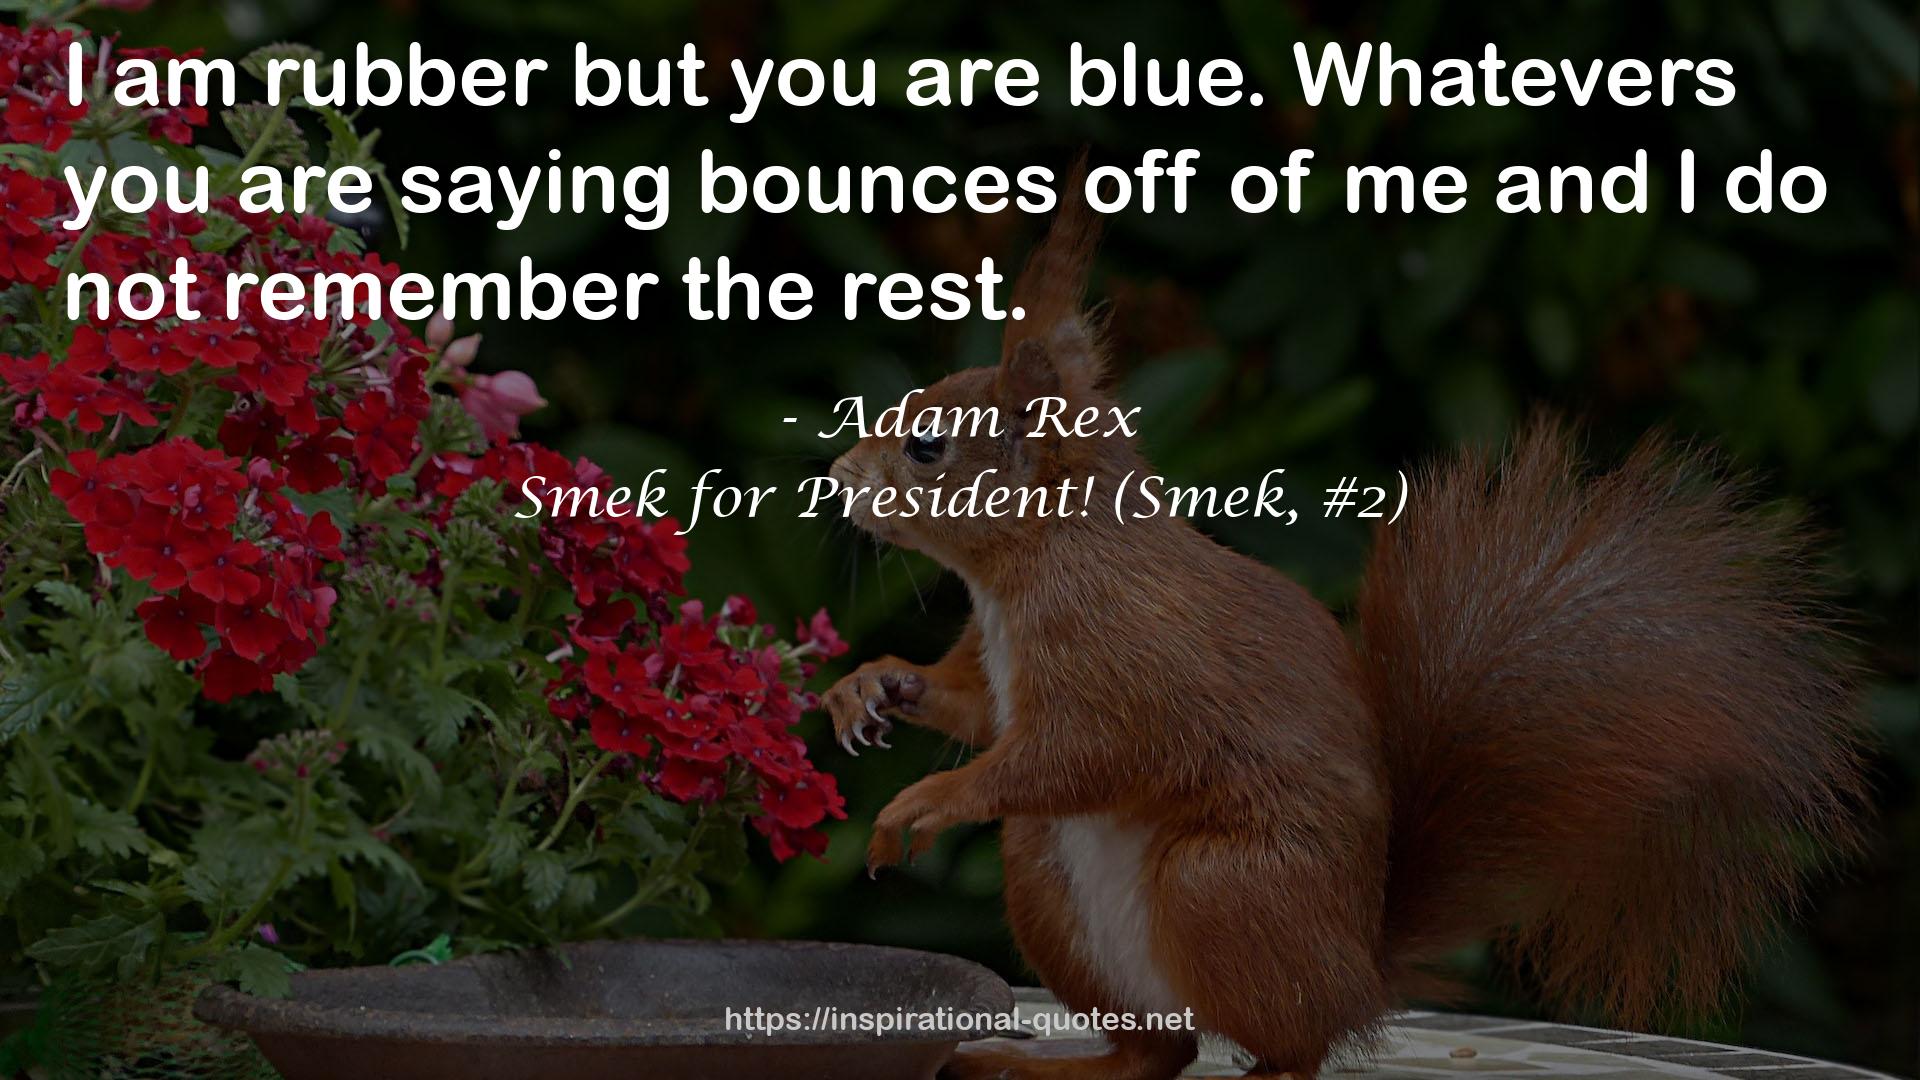 Smek for President! (Smek, #2) QUOTES